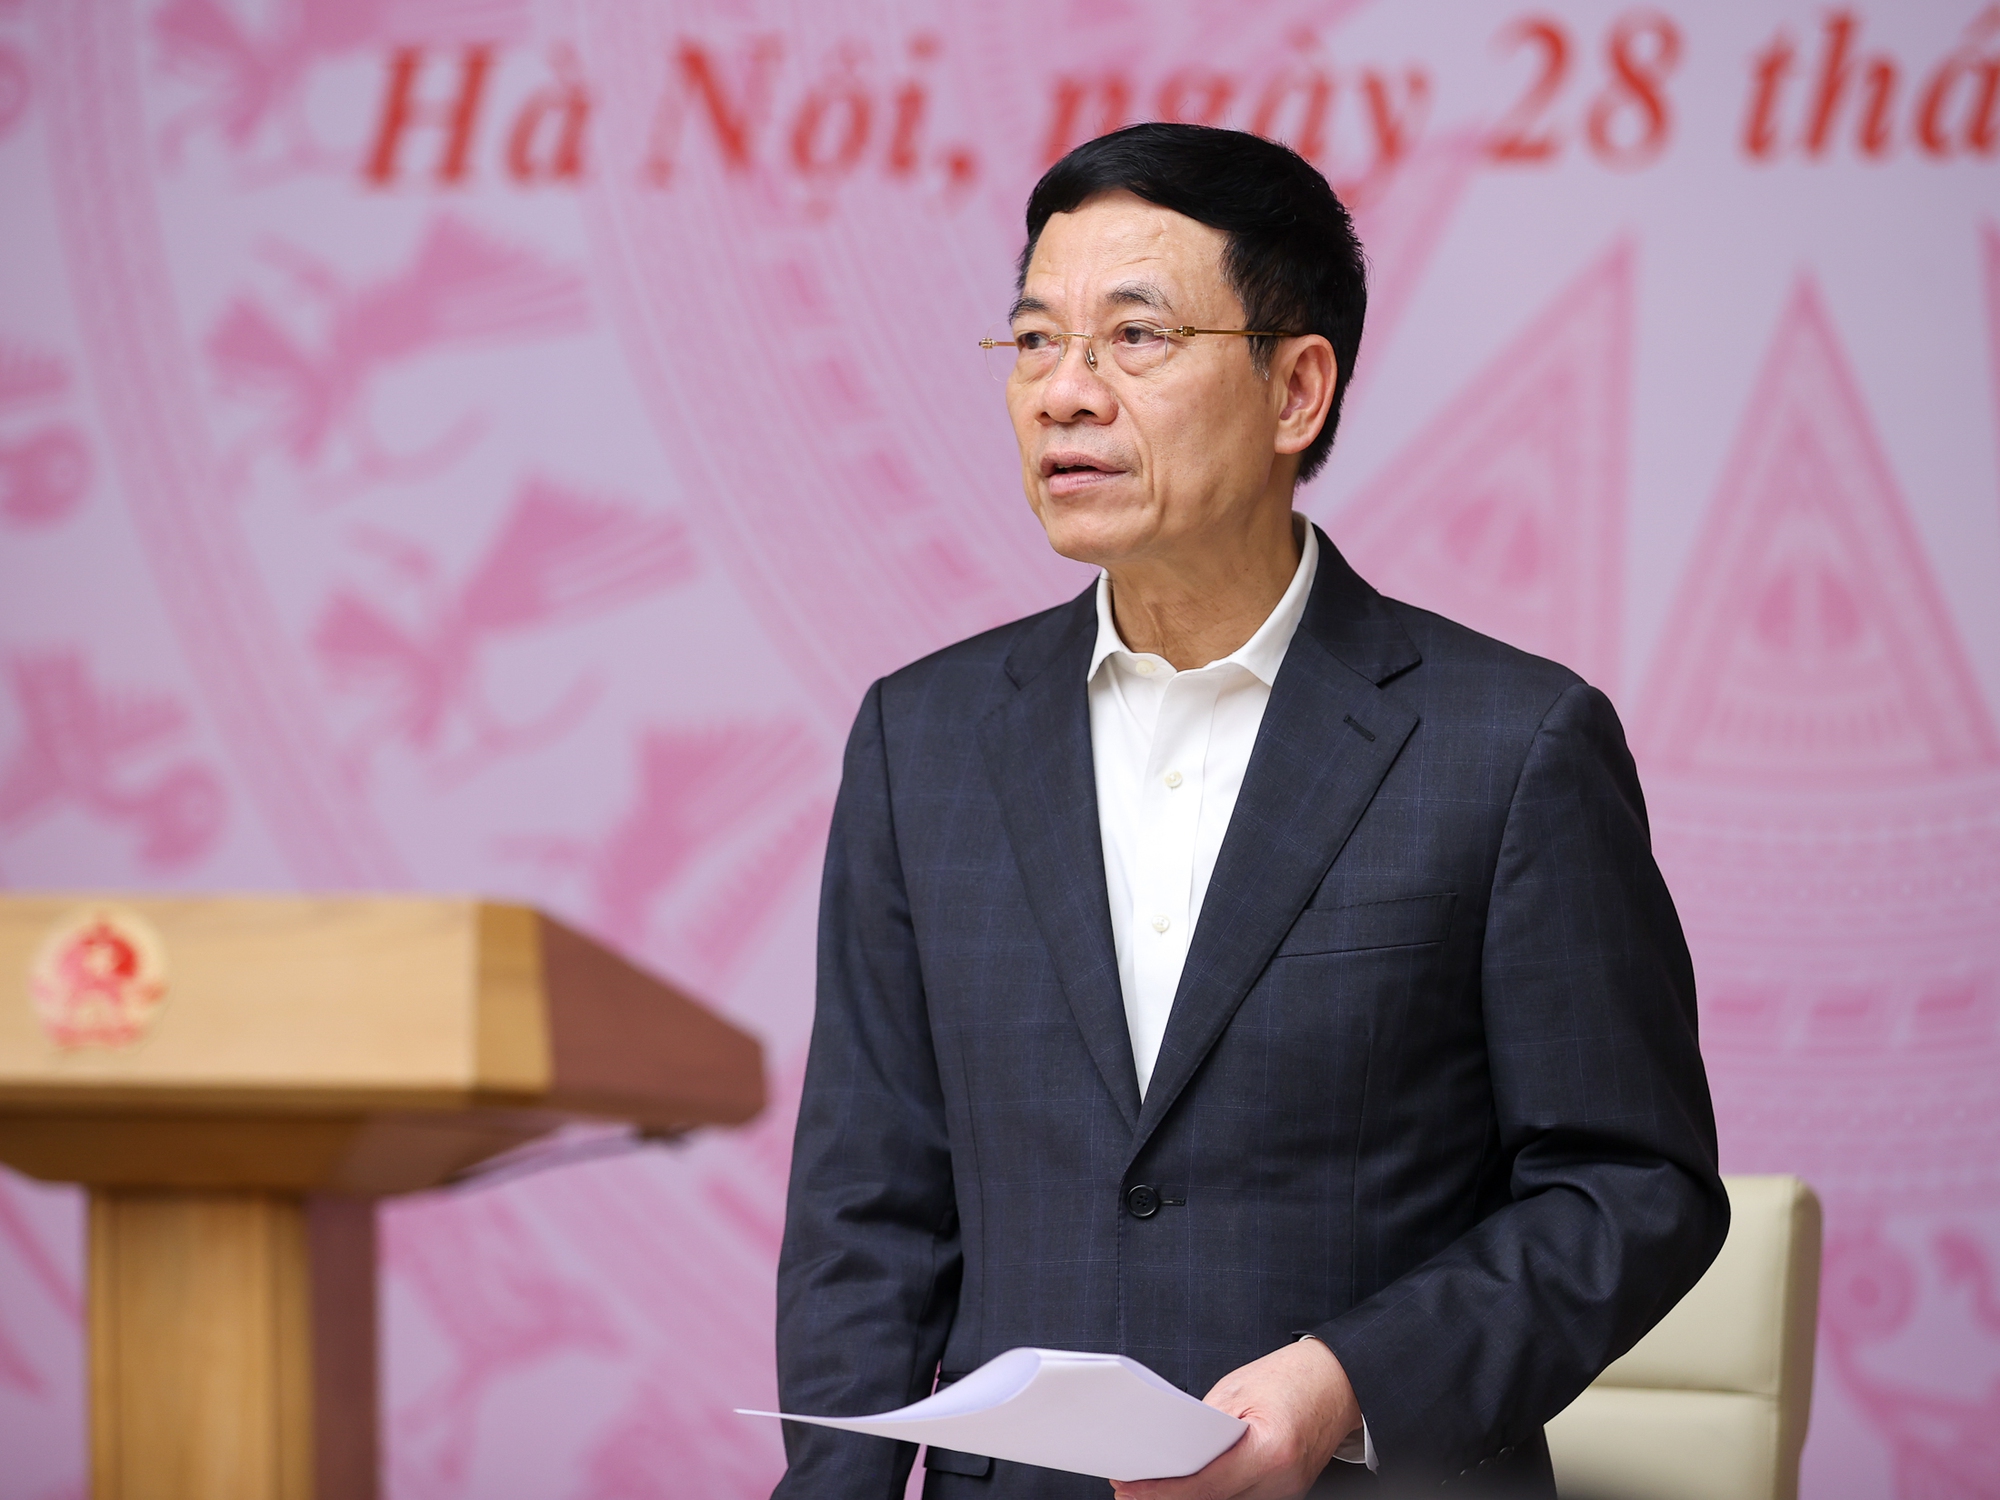 Bộ trưởng Bộ Thông tin và Tuyền thông Nguyễn Mạnh Hùng phát biểu tại hội nghị - Ảnh: VGP/Nhật Bắc